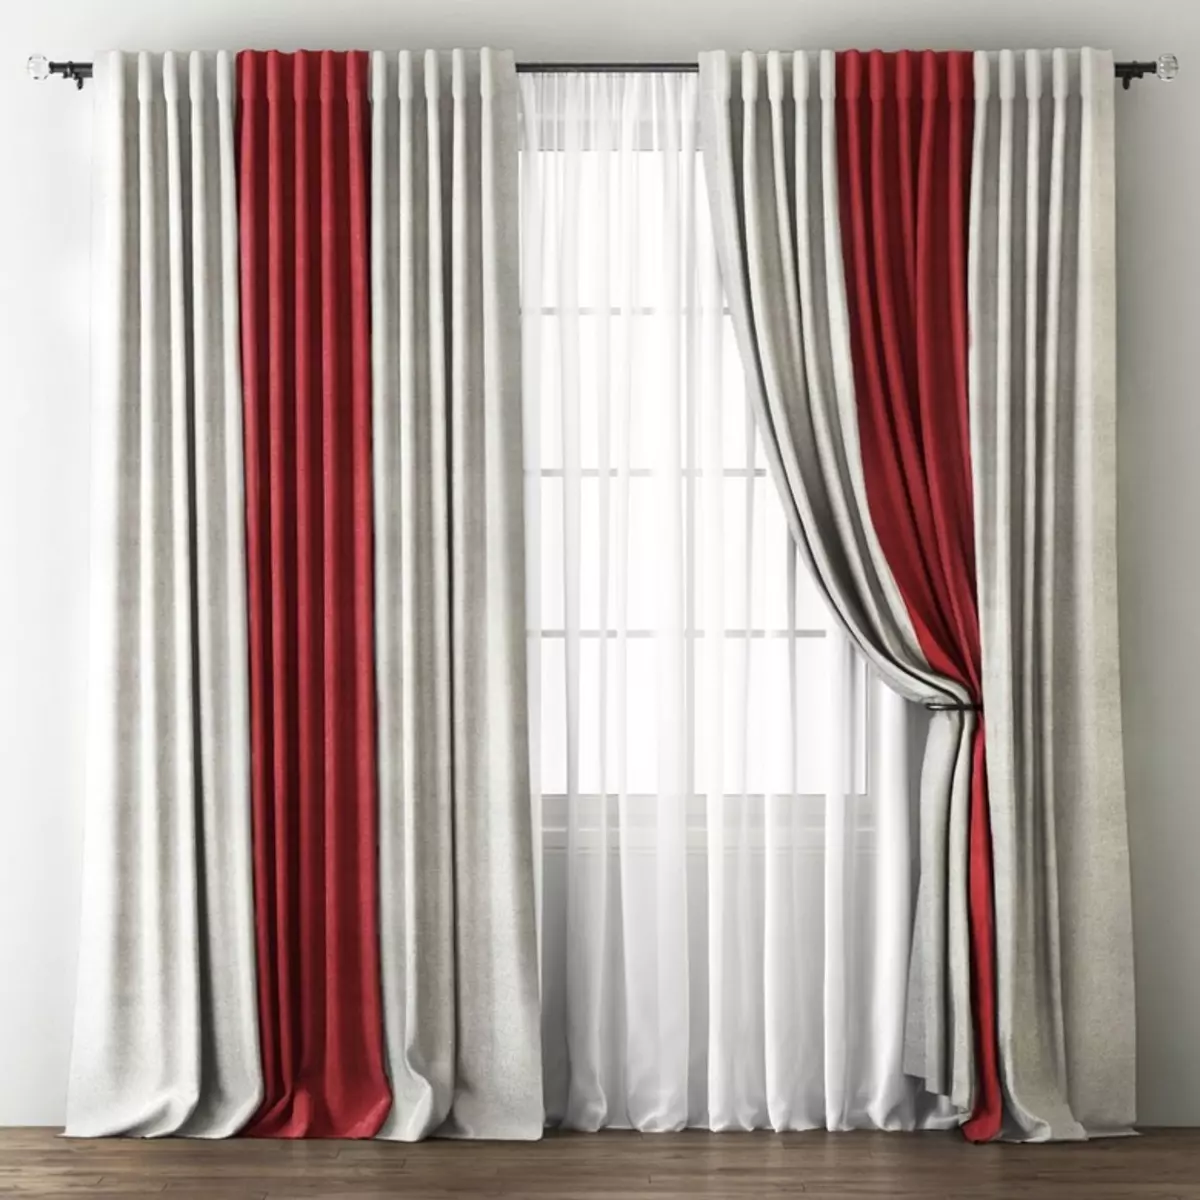 Färggardiner i sovrummet (61 bilder): Hur man väljer en lämplig nyans? Hur man väljer en solig gardiner? De mest lämpliga kombinationerna av toner av gardiner, tapeter och möbler 21293_61